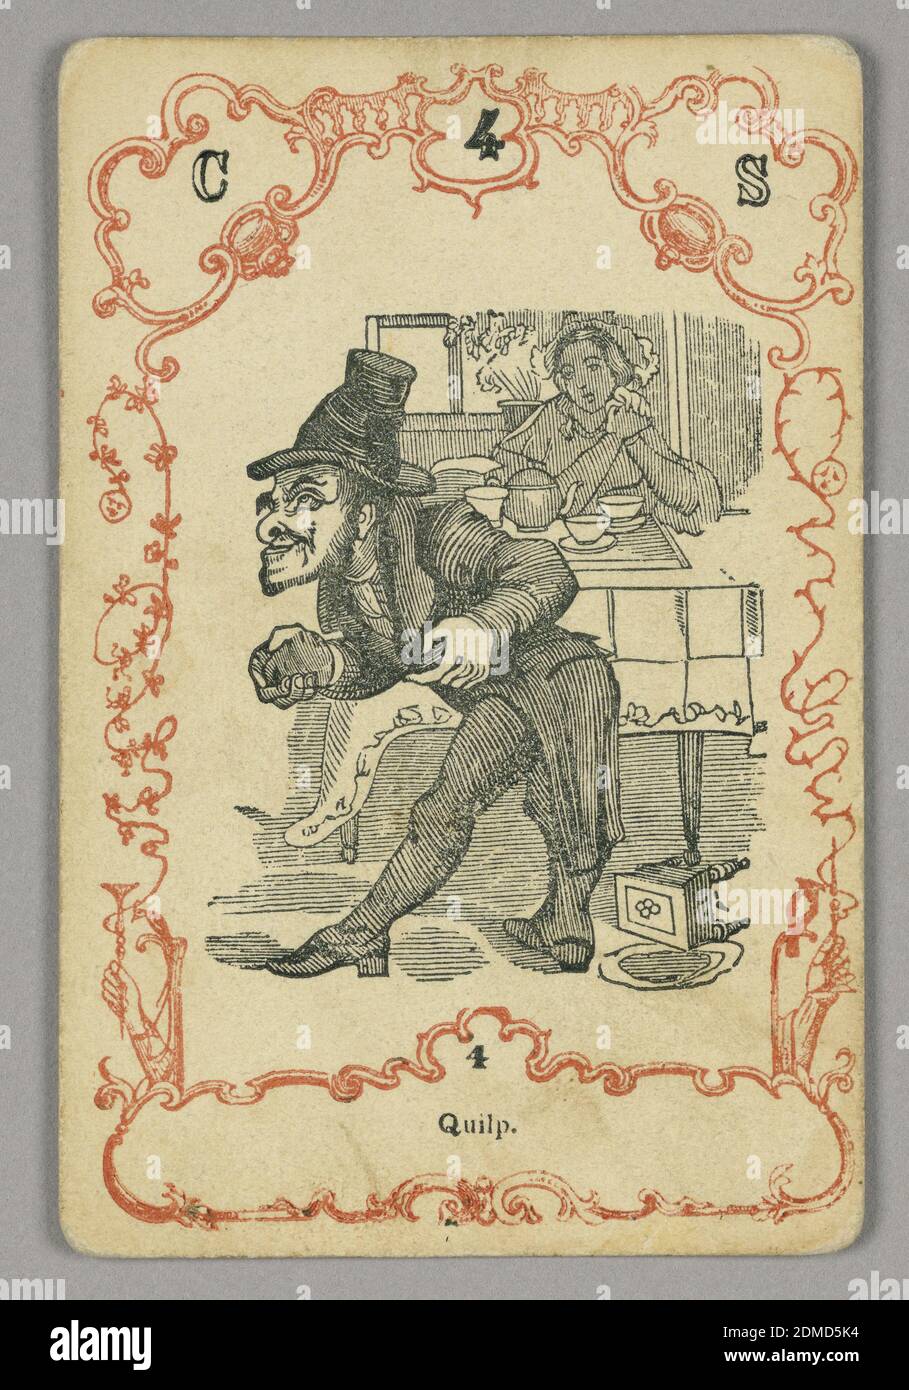 Carte à jouer, encre rouge et noire, papier, carte numérotée en haut: C 4 S; en dessous de l'image centrale: 4, Europe, ca. 1855, carte à jouer Banque D'Images